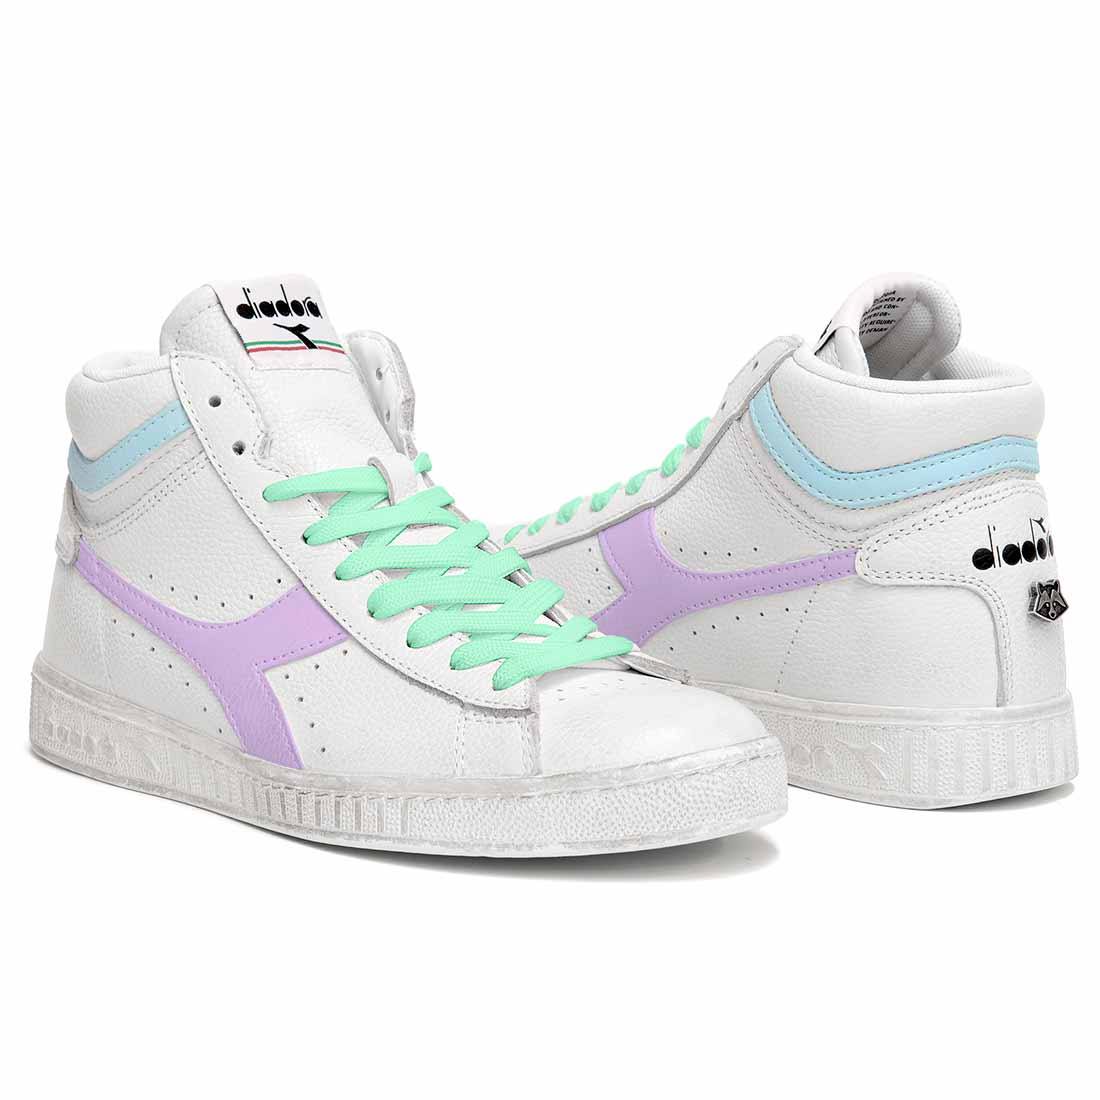 sneakers diadora game high personalizzate con colori pastello viola e azzurro